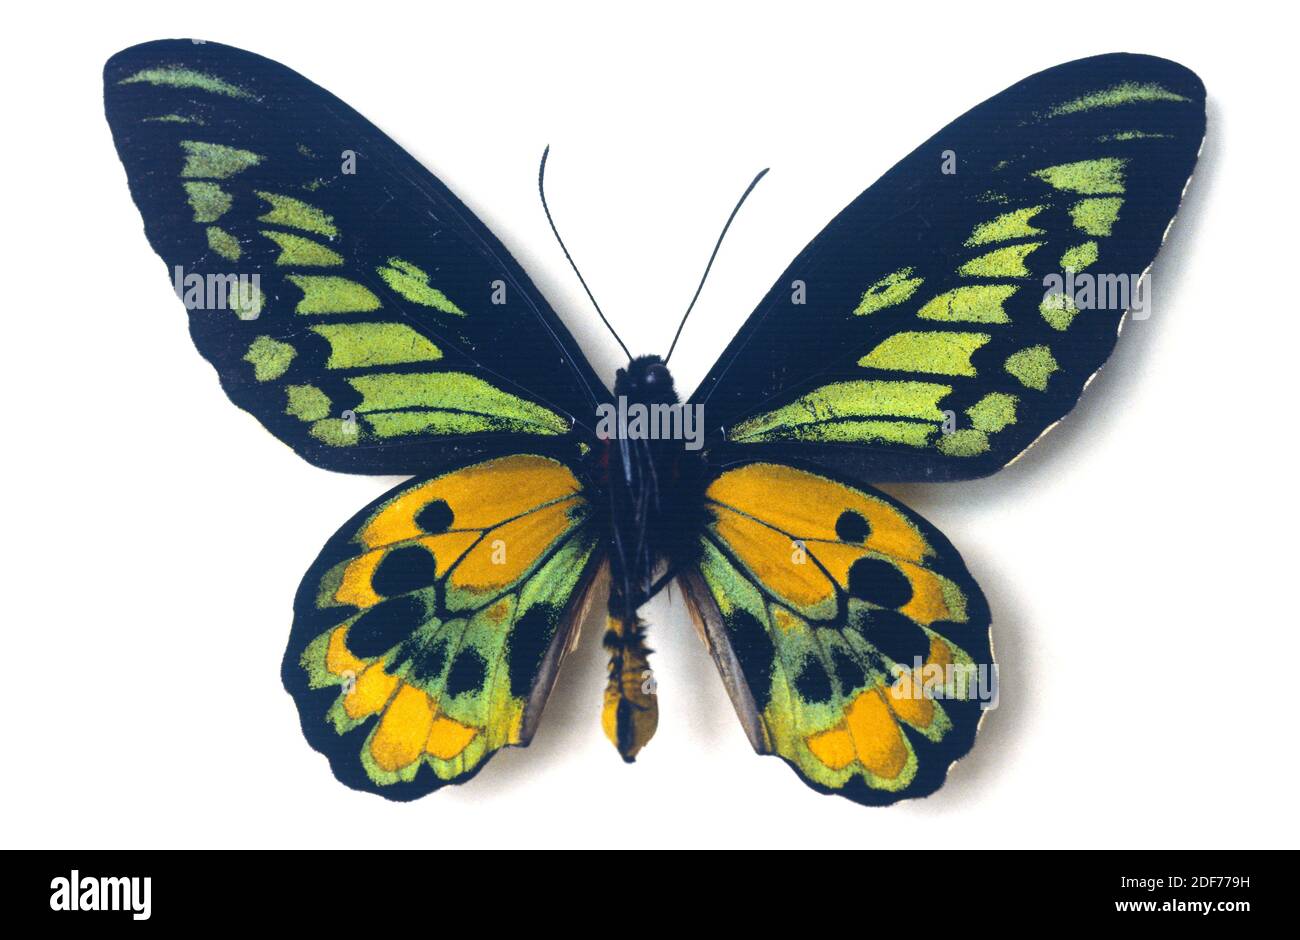 Il birdwing di Rothschild (Ornithoptera rothschildi) è una farfalla originaria della Nuova Guinea. Maschio, lato ventrale. Foto Stock